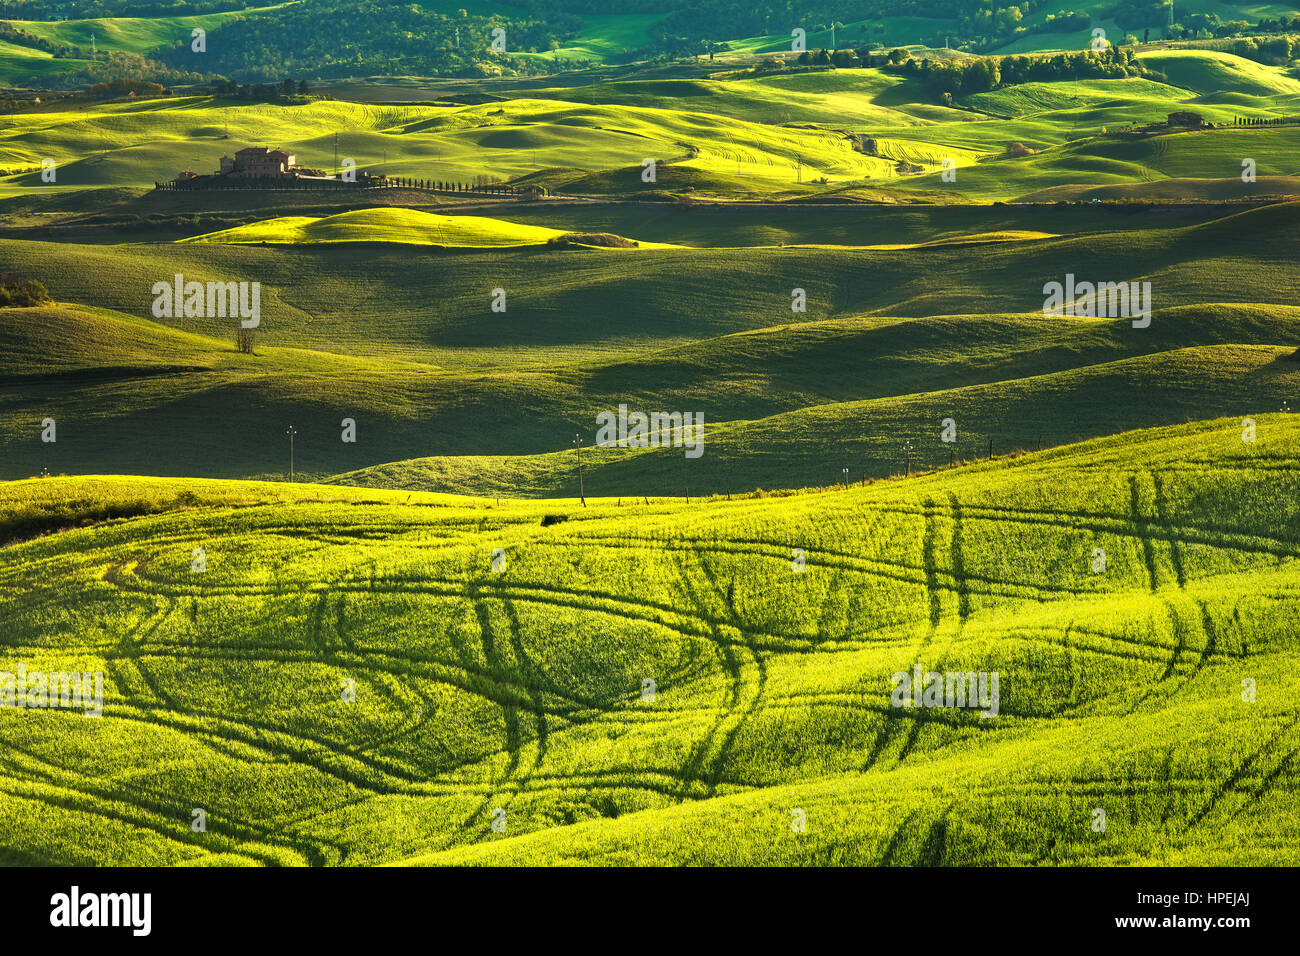 Tuscany Frühling, sanften Hügeln am Sonnenuntergang. Volterra Kulturlandschaft. Grüne Wiesen und Ackerland. Italien, Europa Stockfoto